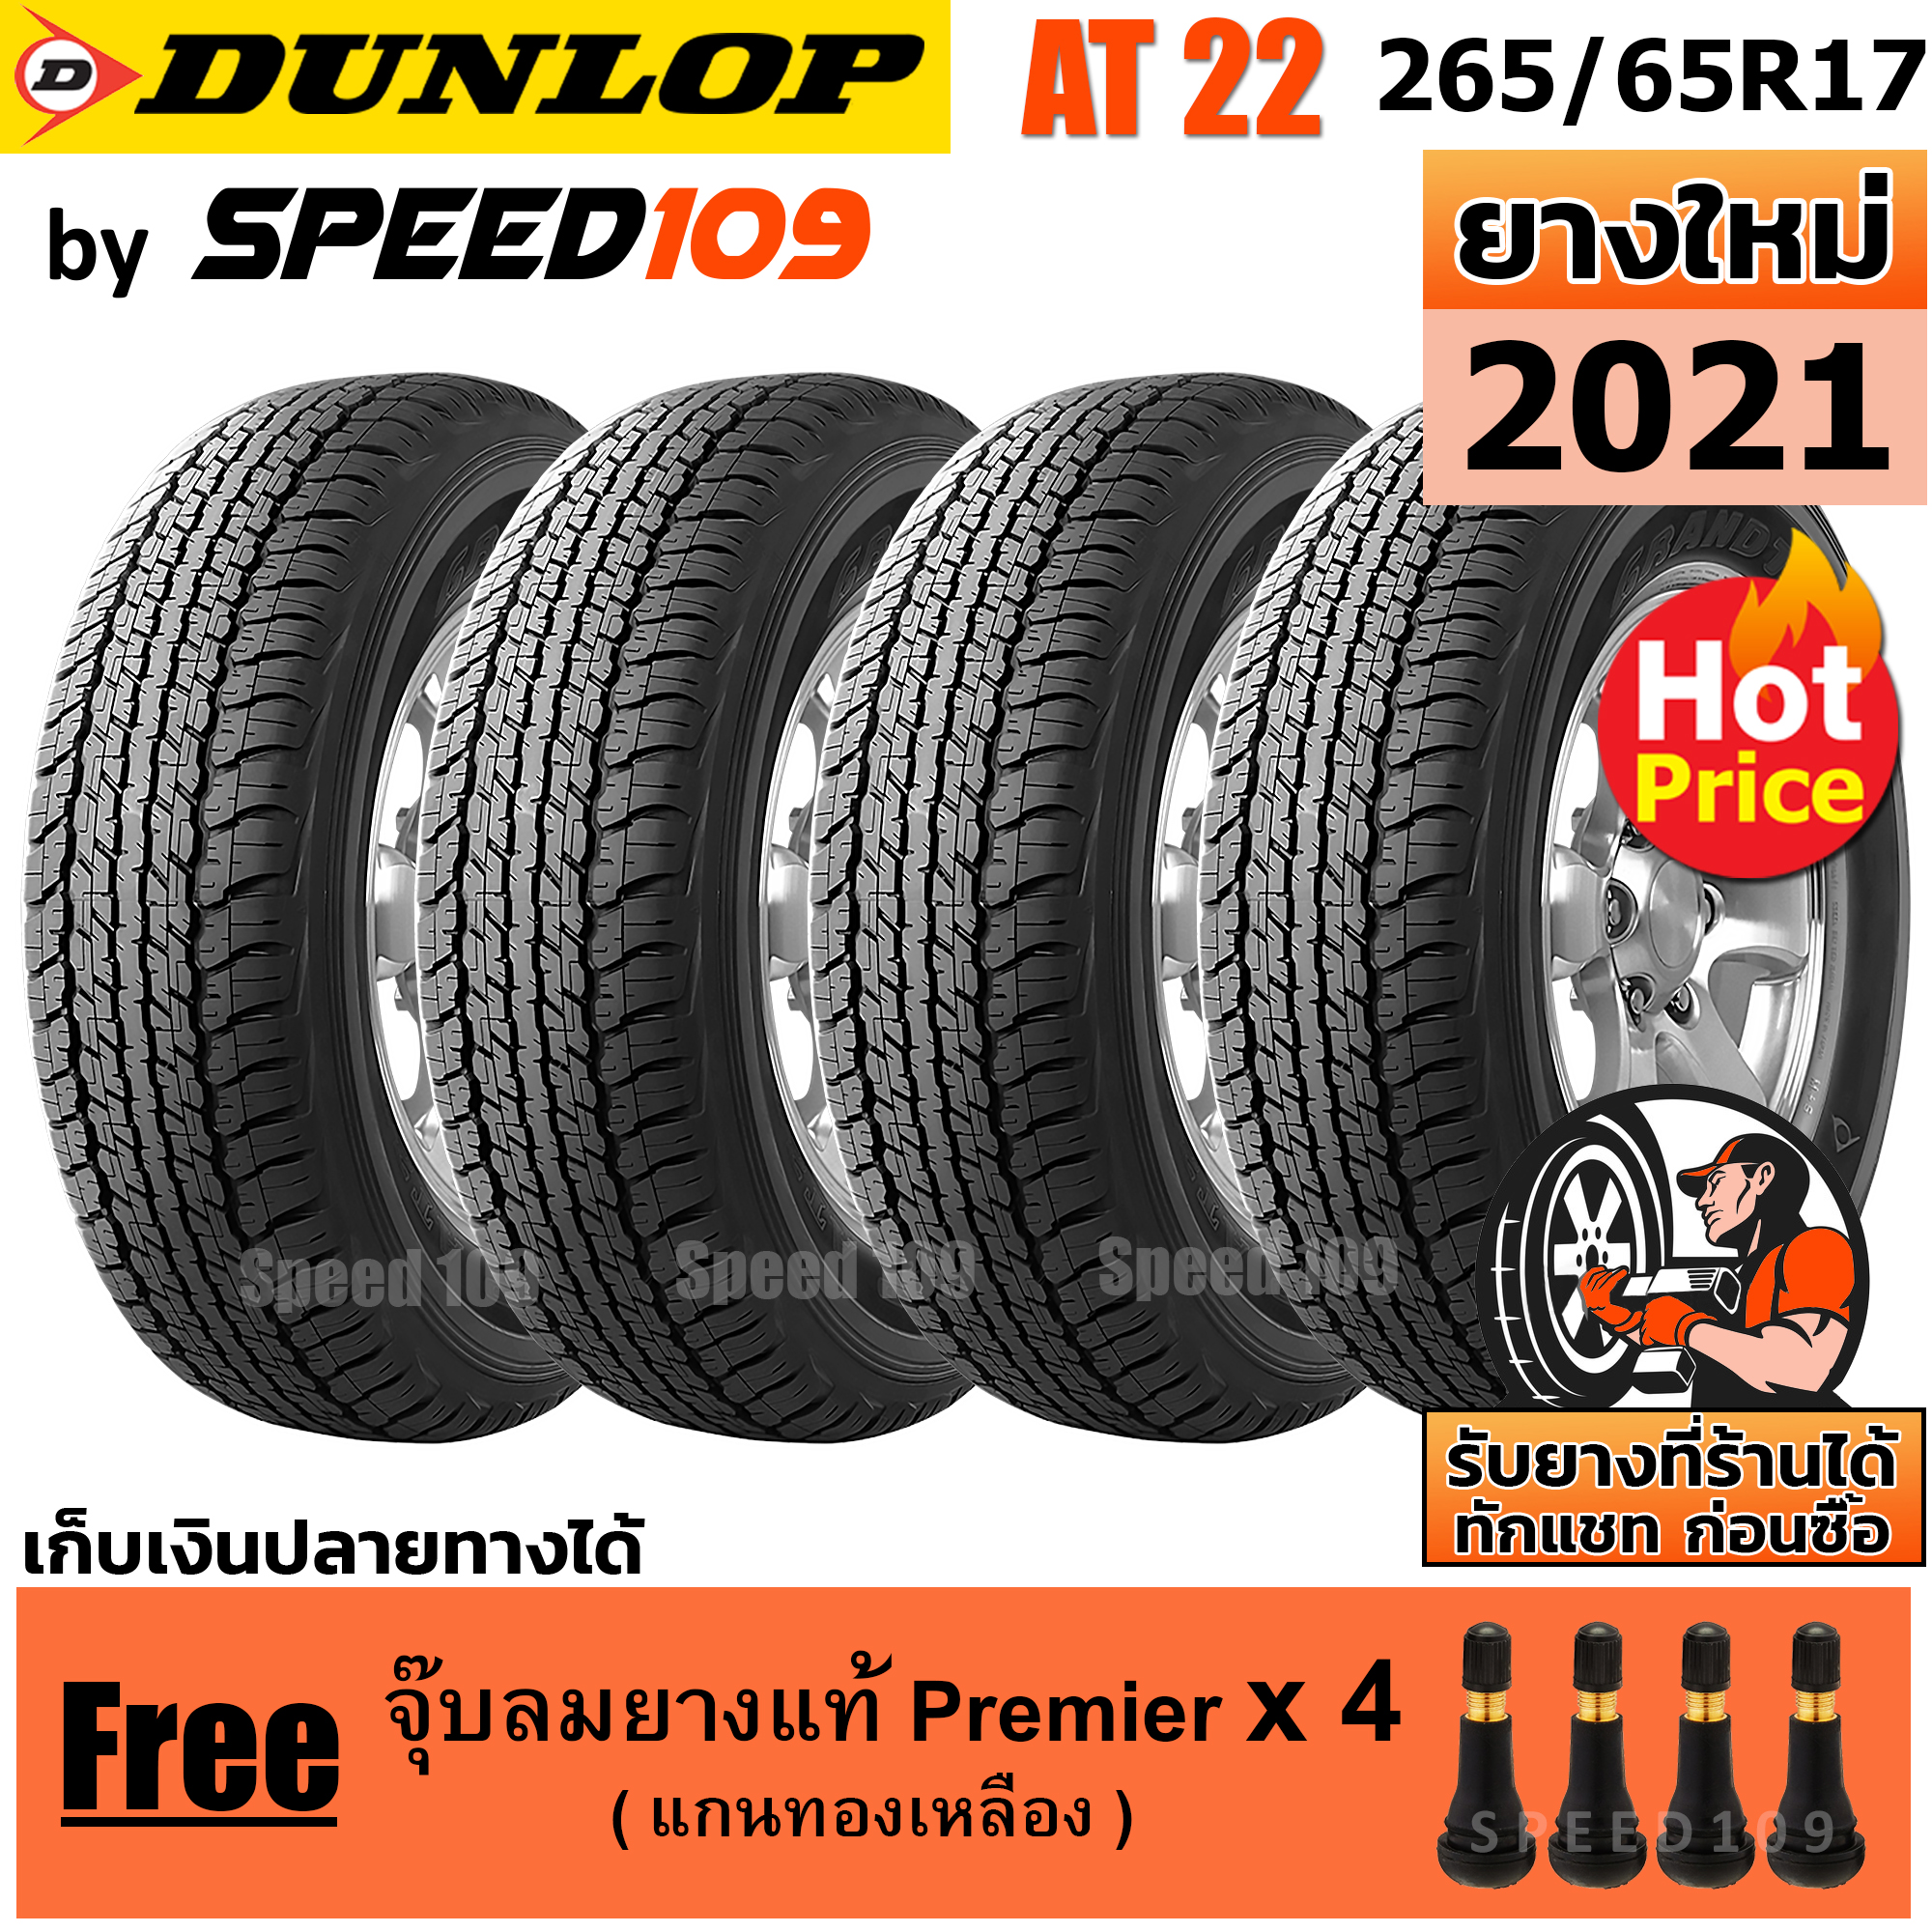 DUNLOP ยางรถยนต์ ขอบ 17 ขนาด 265/65R17 รุ่น Grandtrek AT22 - 4 เส้น (ปี 2021)